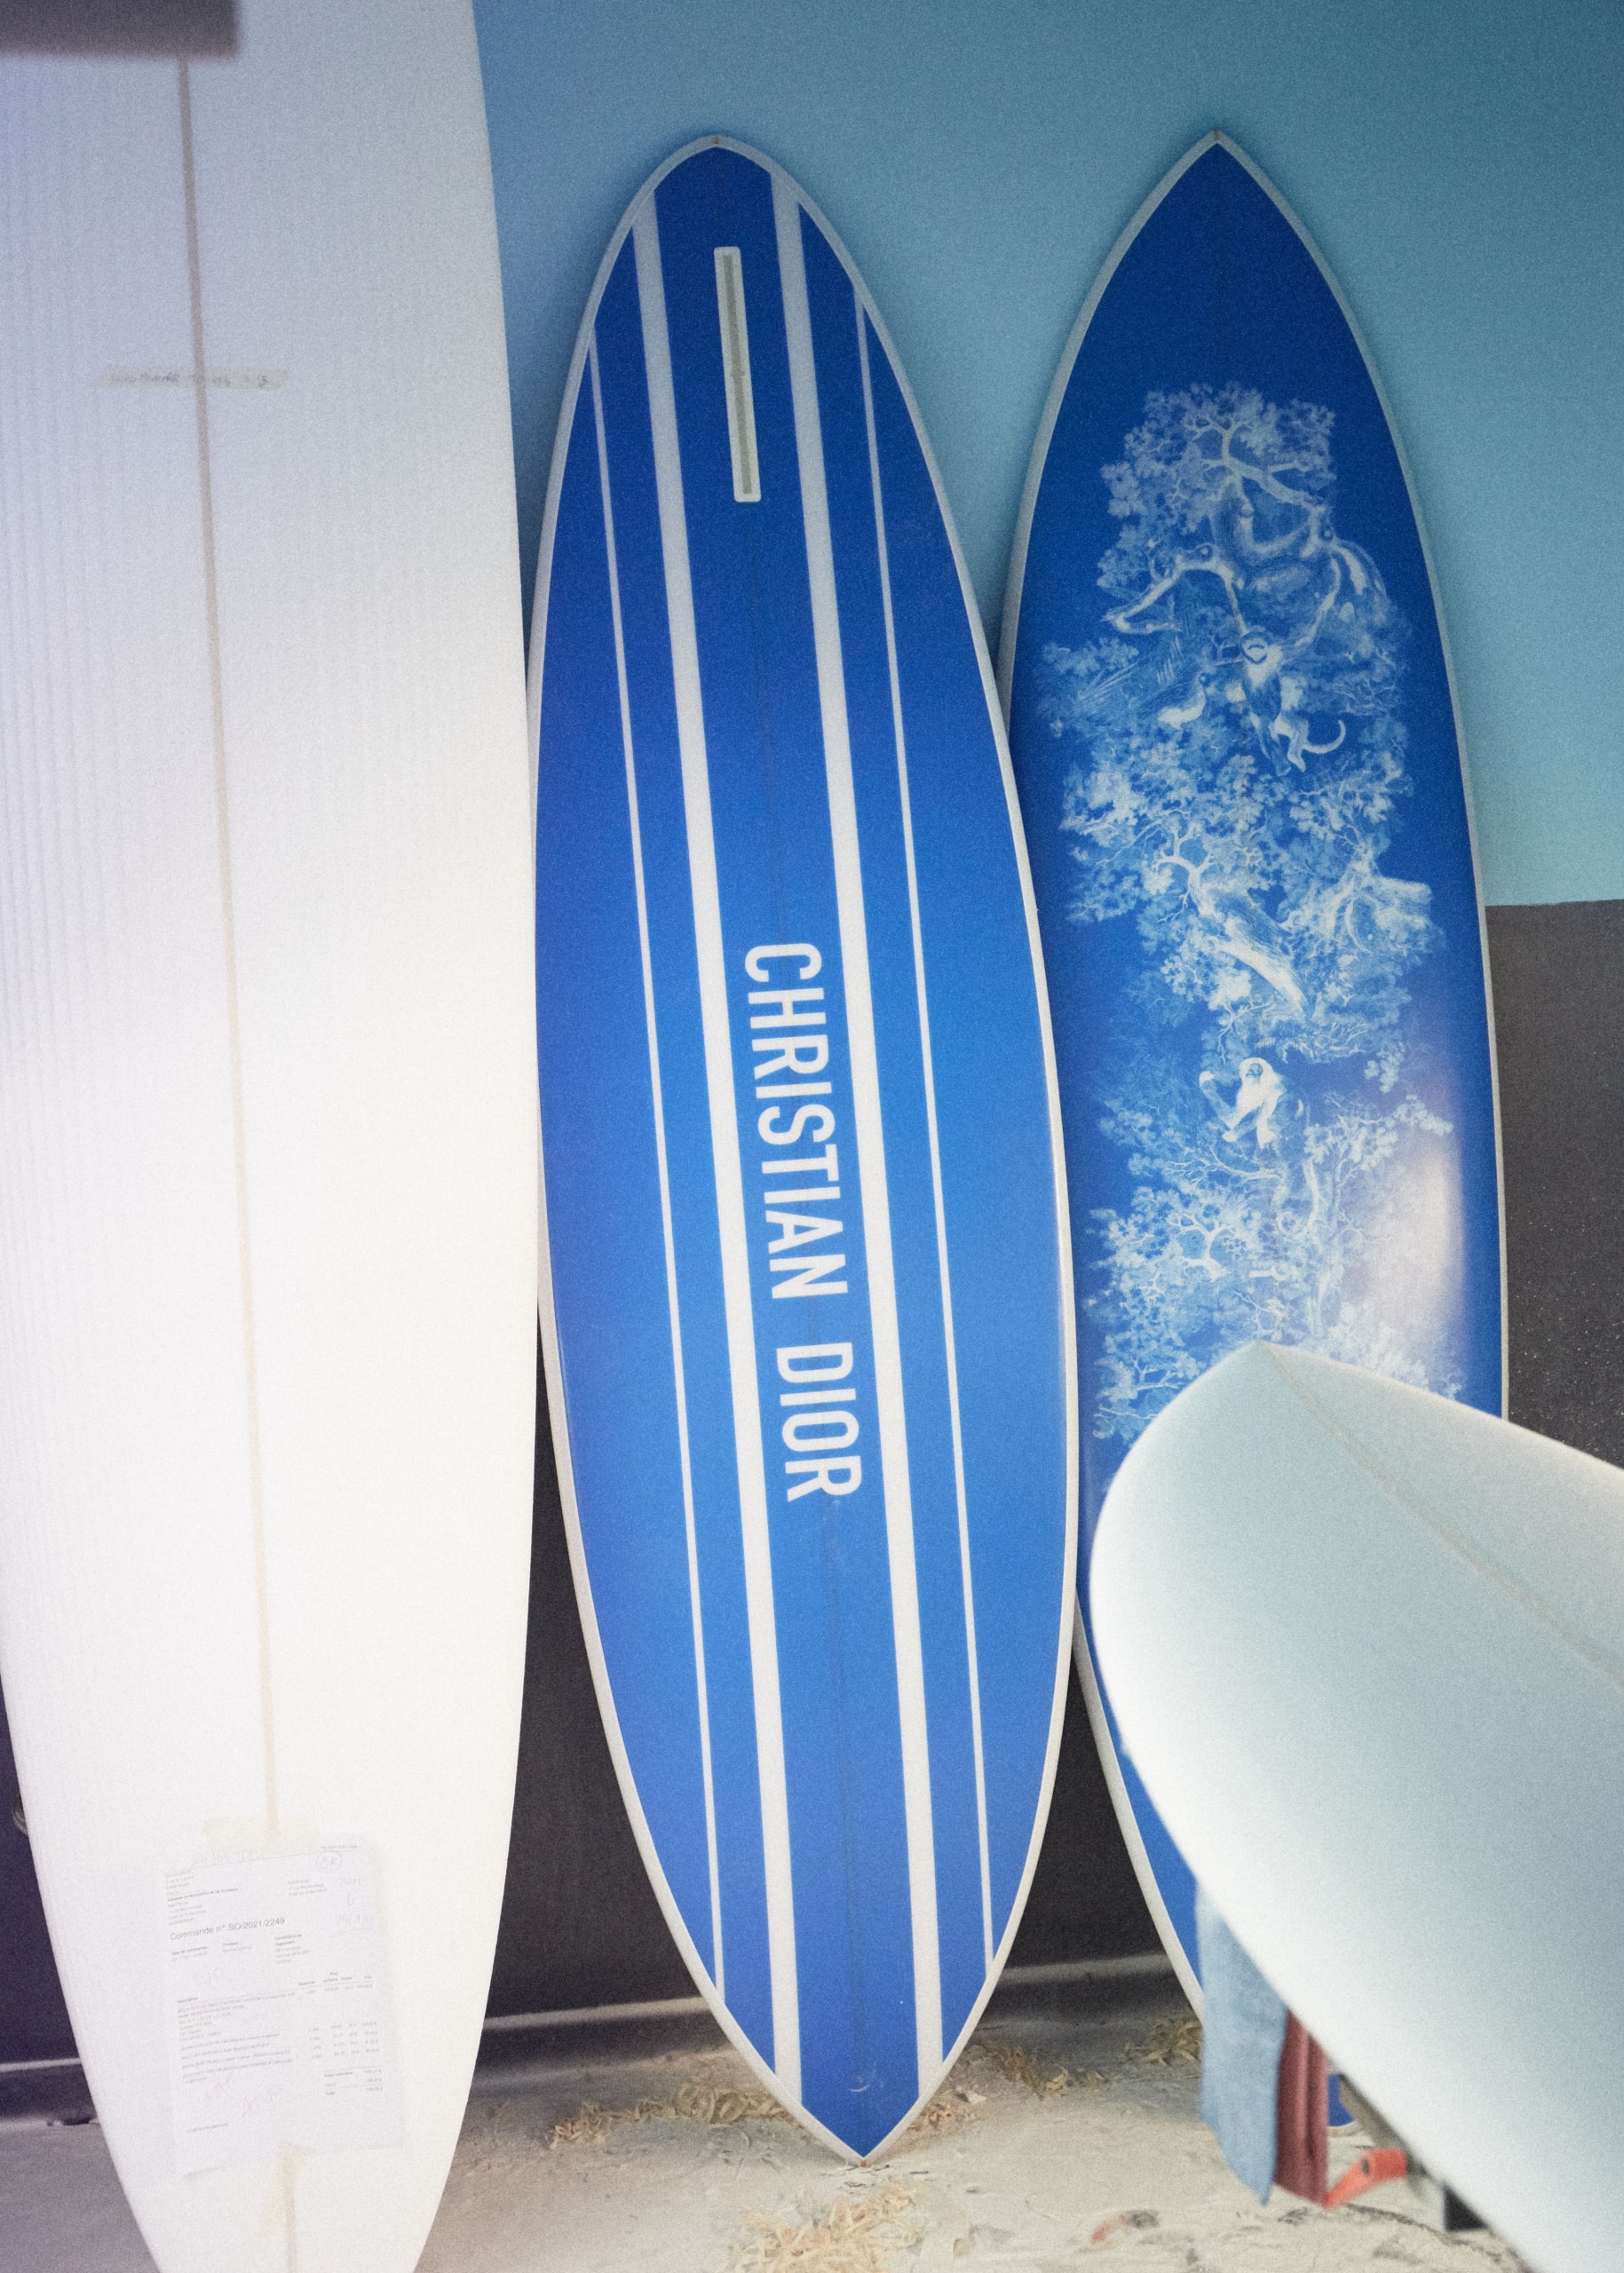 ディオール メゾンから卓越した職人技を反映したサーフボードがリリース DIOR MAISON  Savoir-Faire surfboard release info